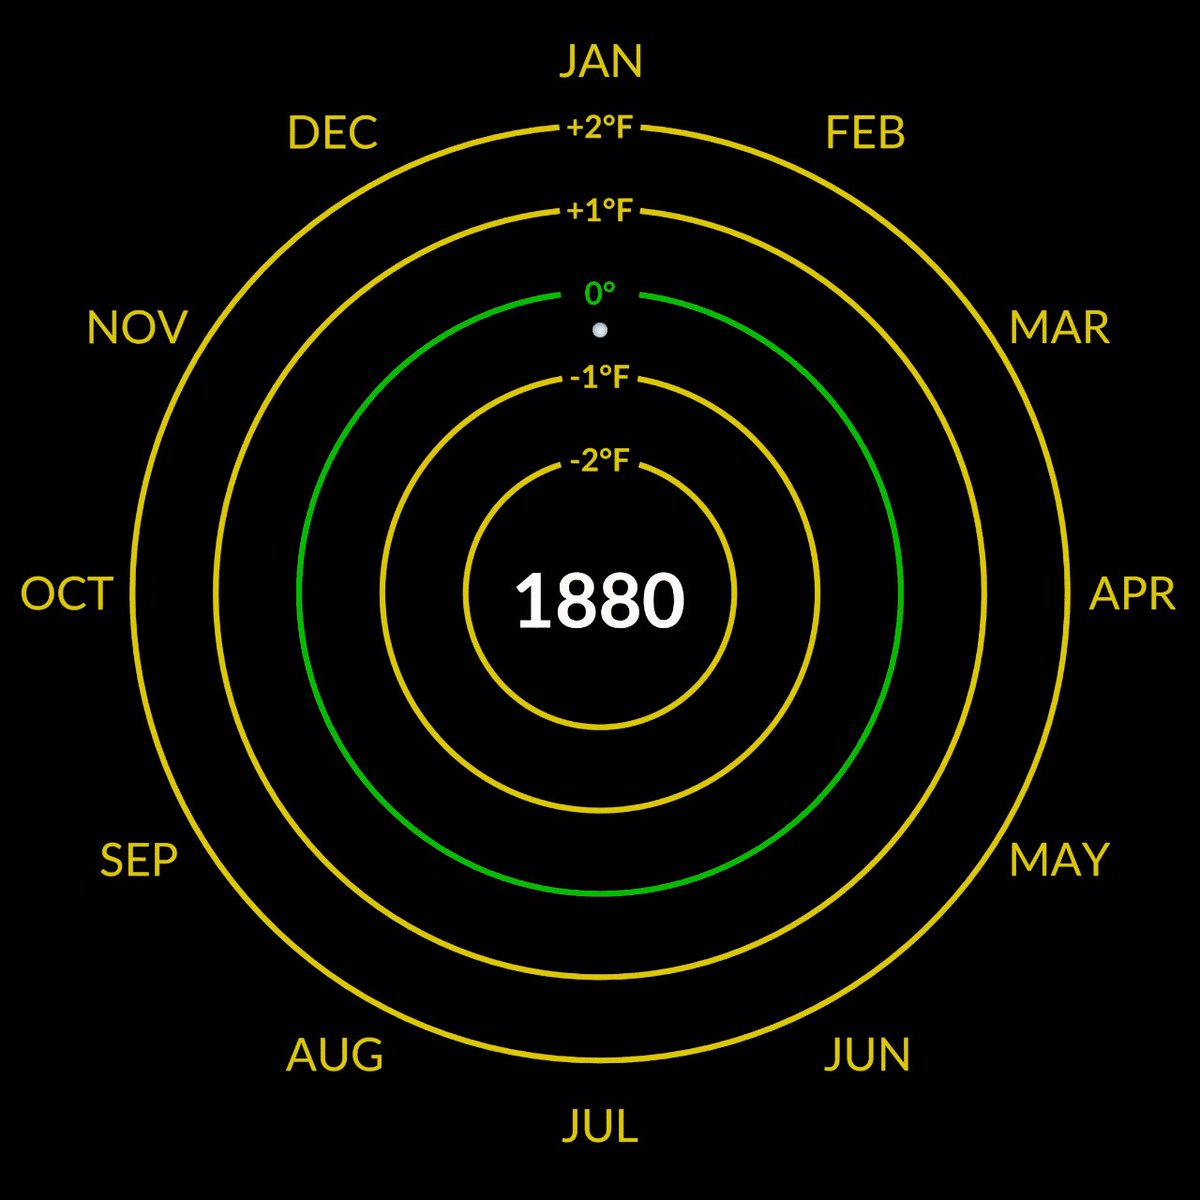 El gráfico es circular con el año en el centro y los meses